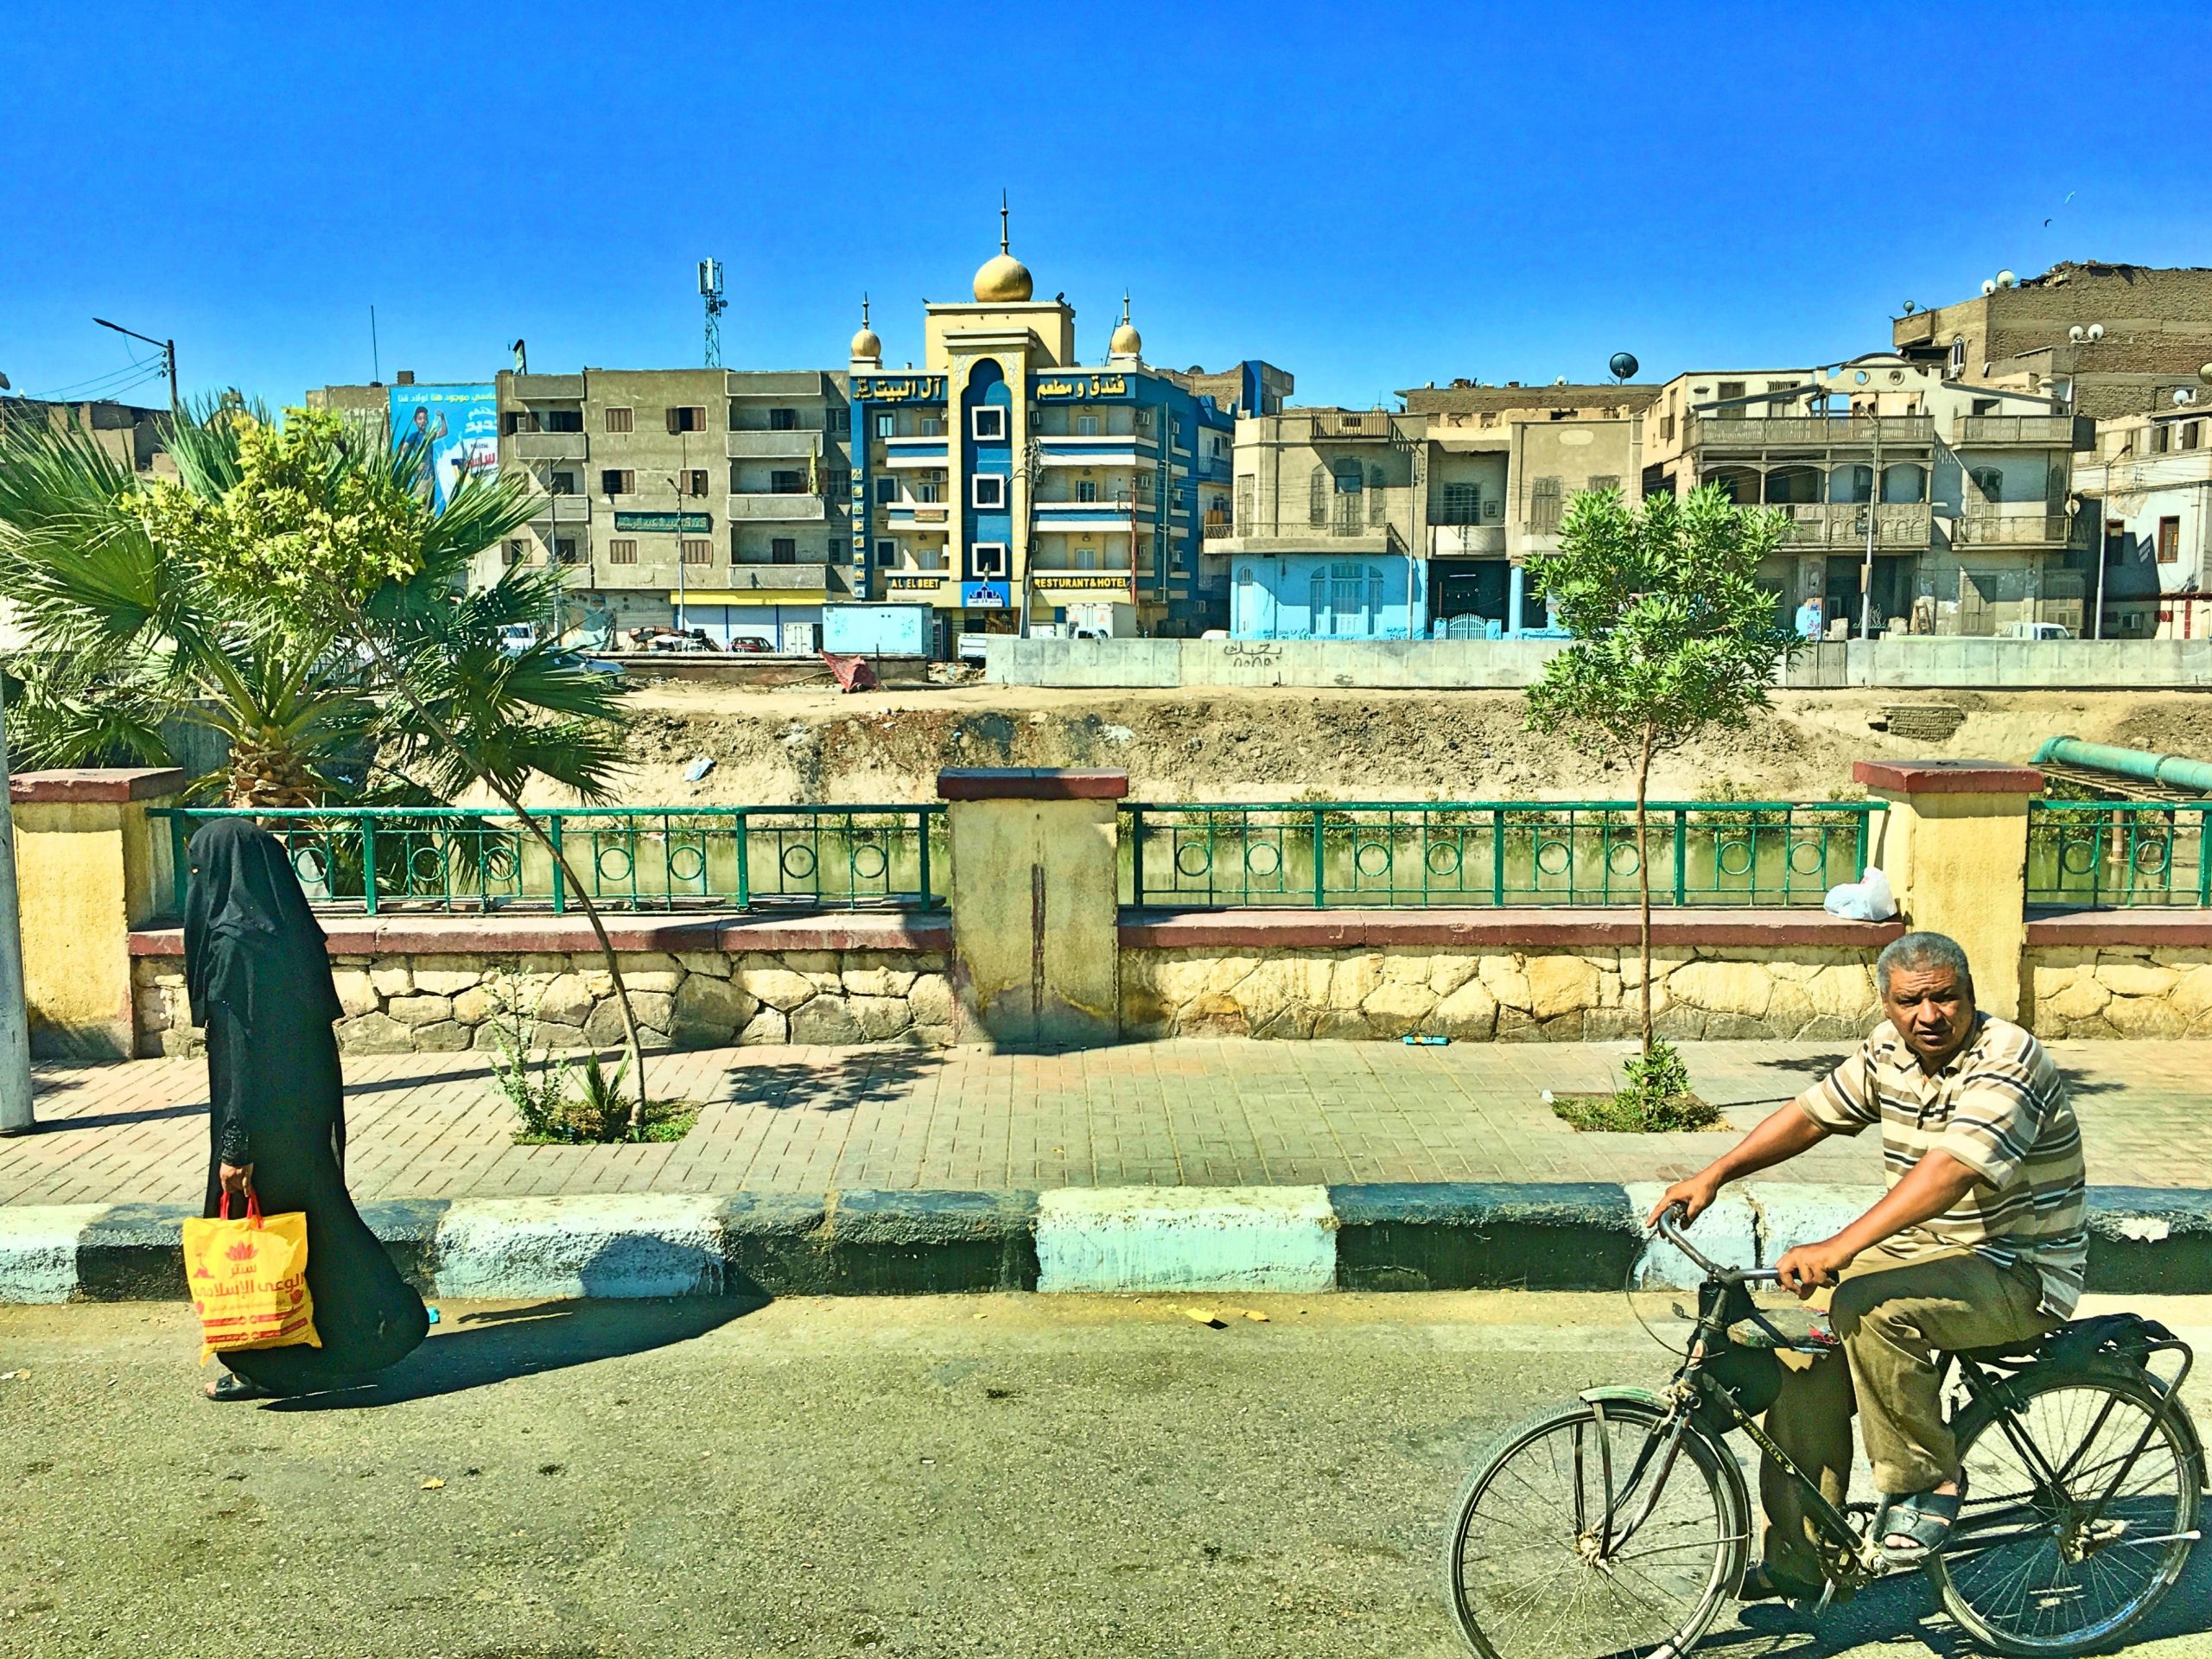 fotka4 scaled - Chudoba v Egypte-V akom svete naozaj žijeme